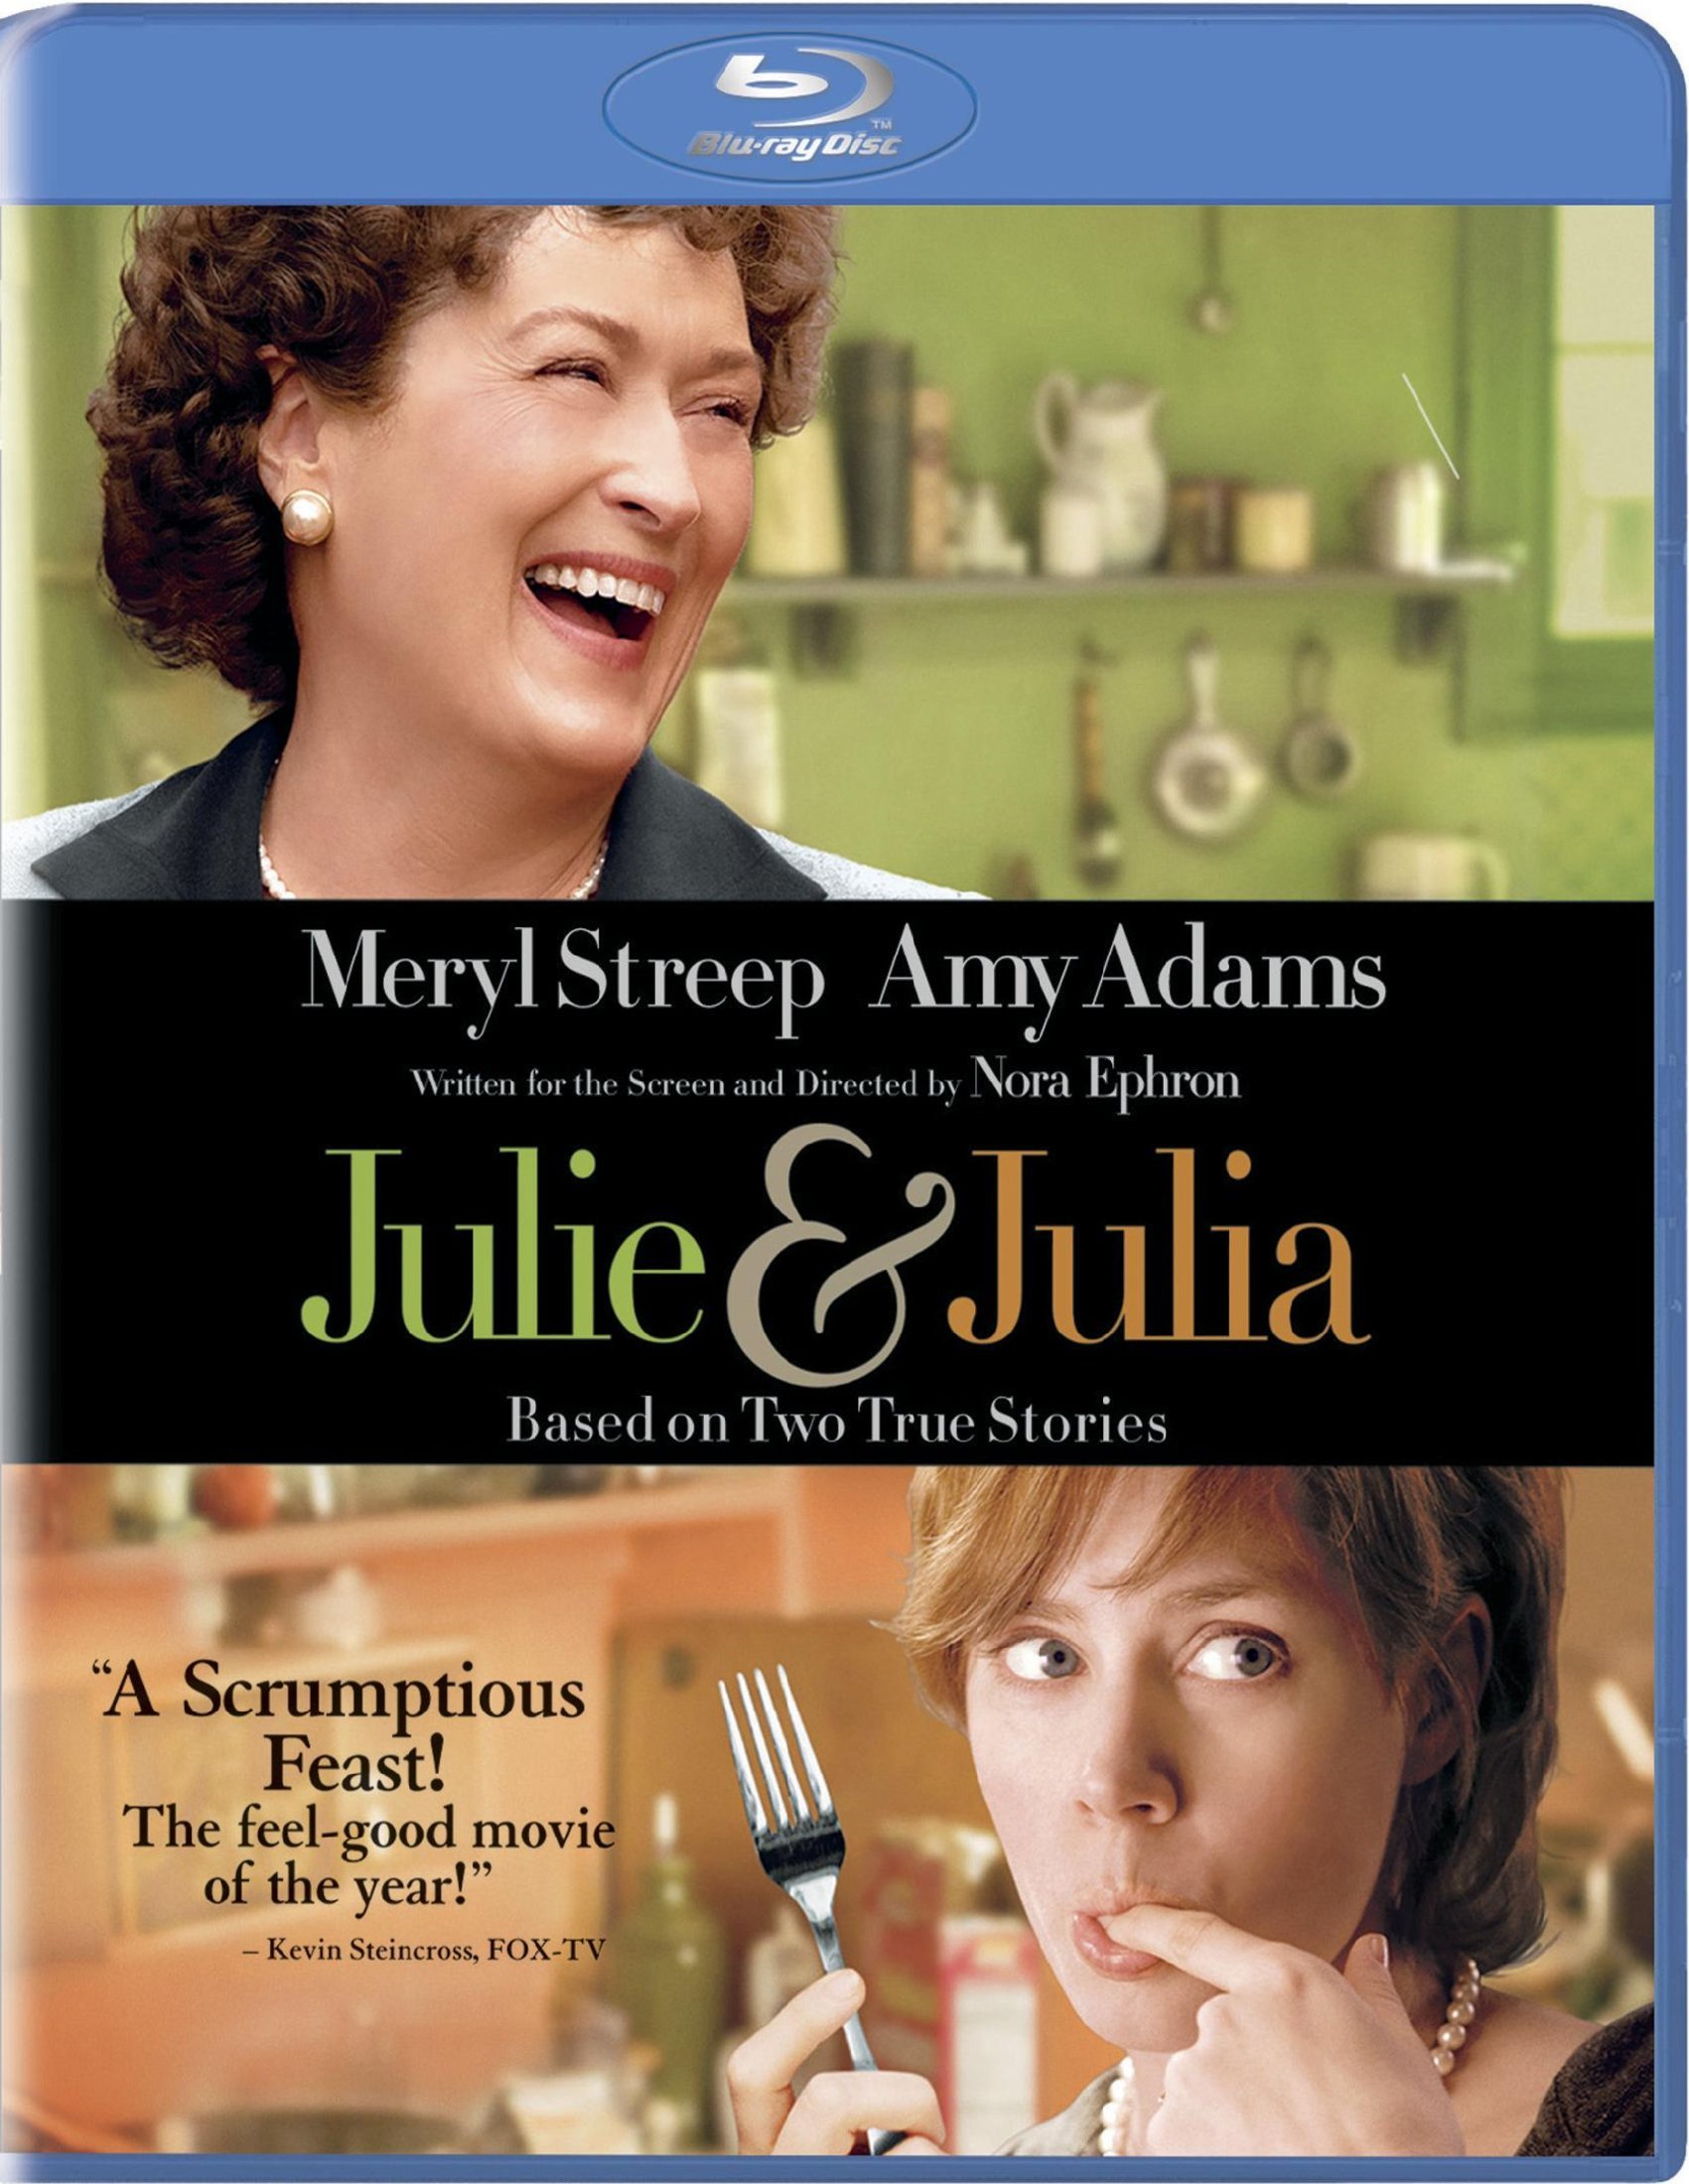 JULIE & JULIA on MovieShack